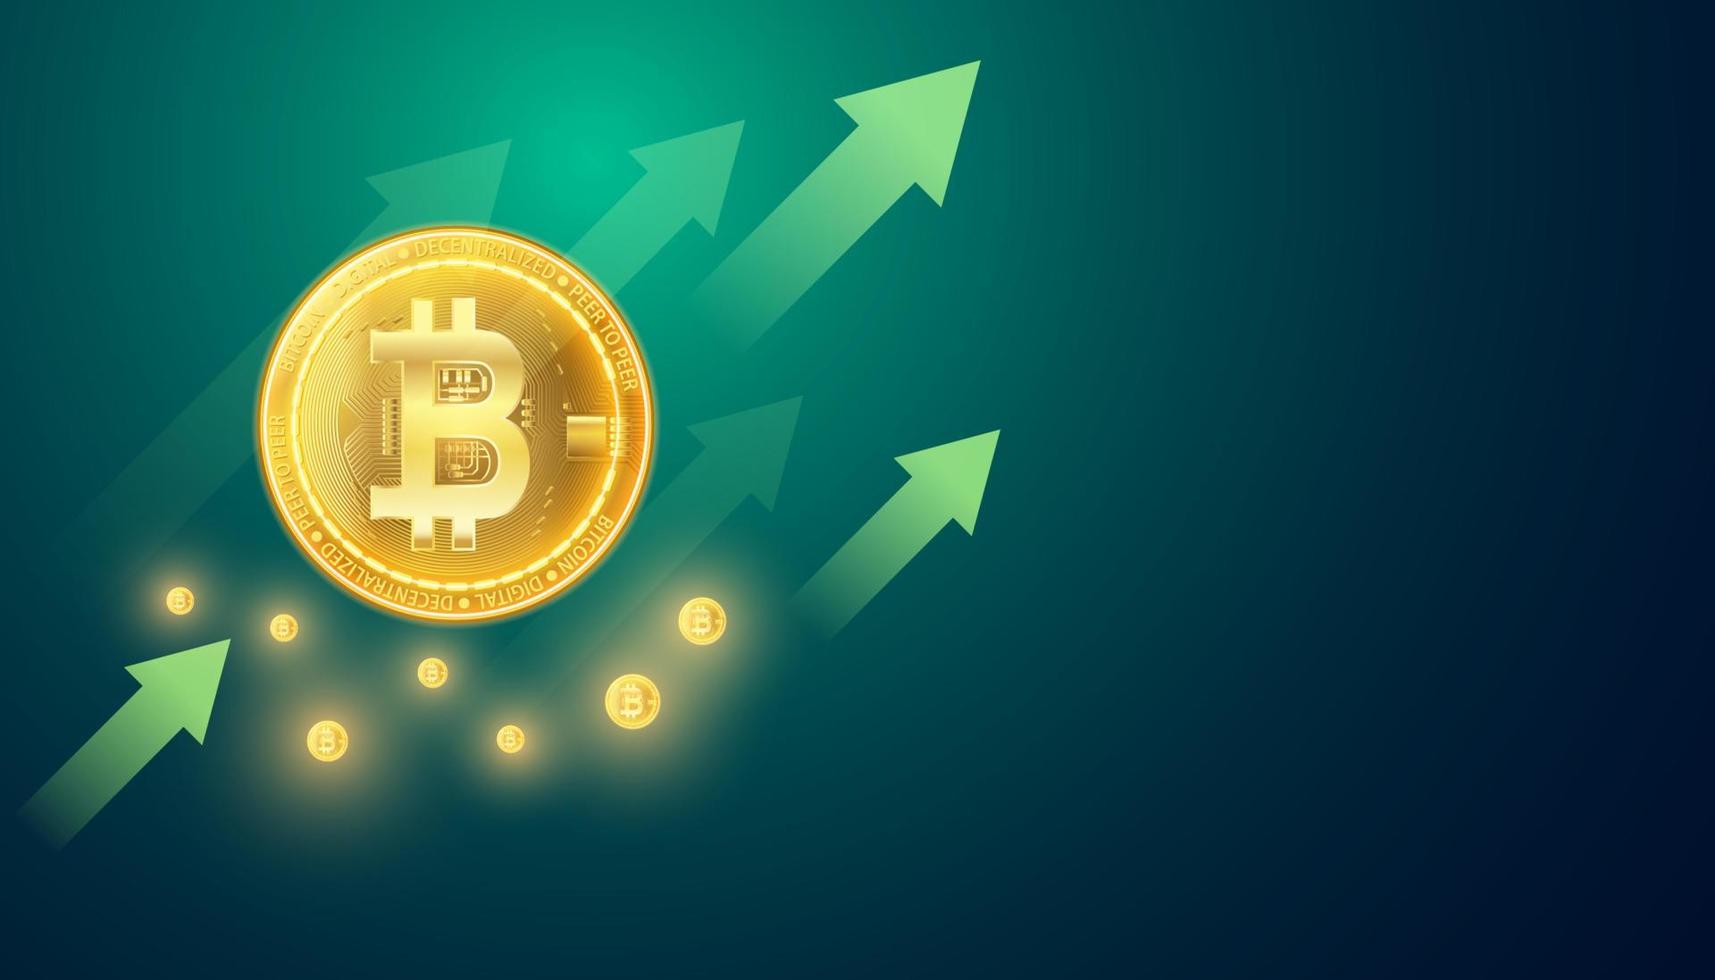 bitcoin abstrait crypto-monnaie décentralisée dans une période haussière, graphique ascendant, signal haussier, vert, sur fond bleu-vert, futuriste, moderne. vecteur